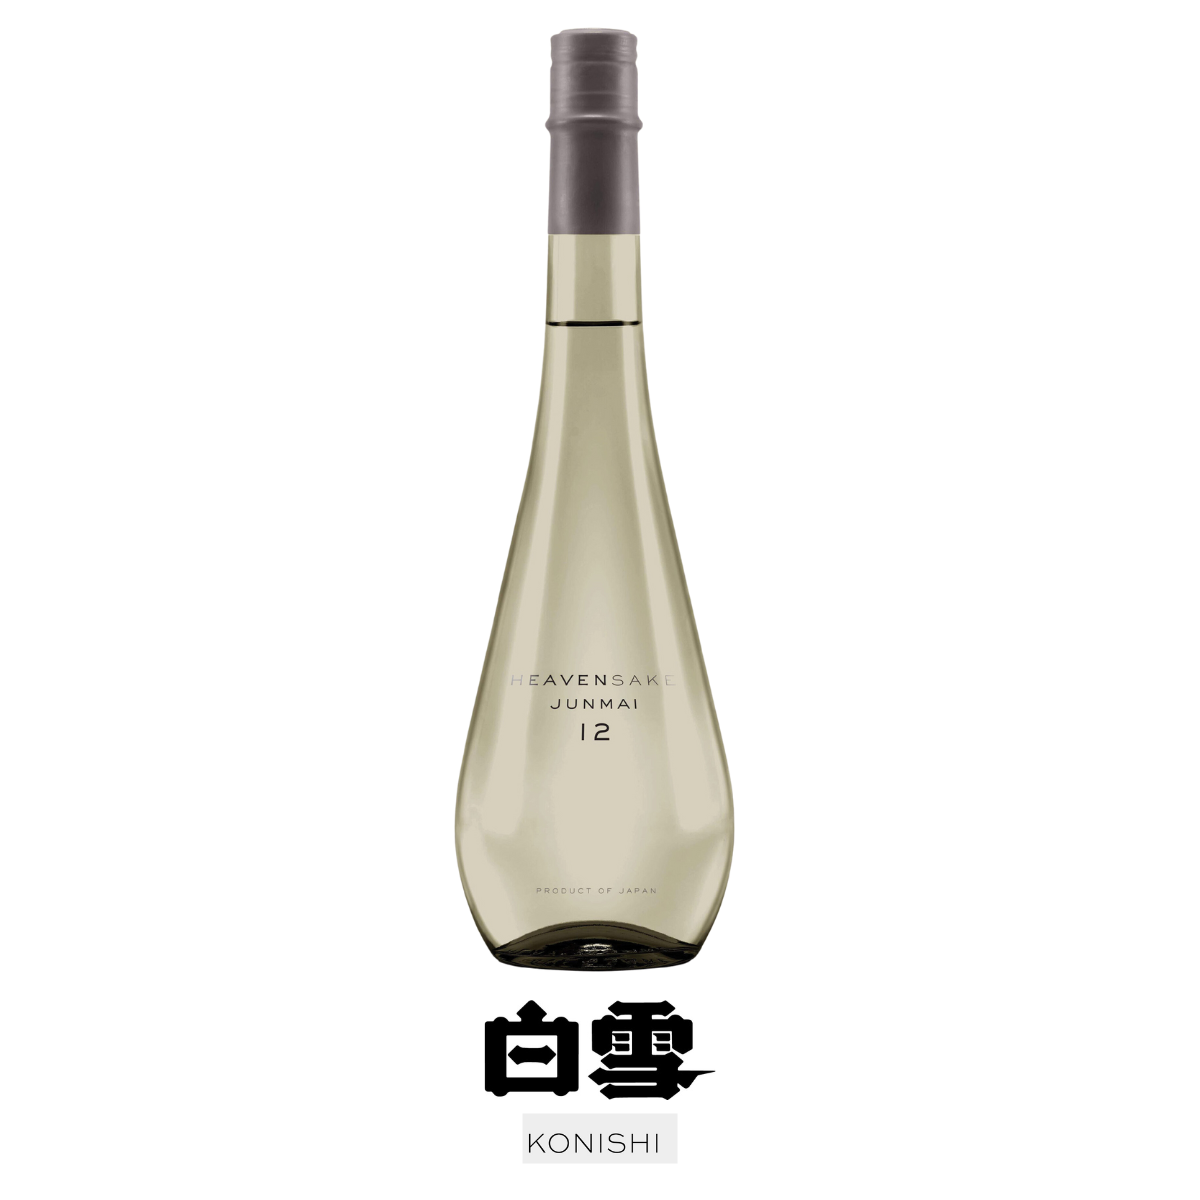 HEAVENSAKE Junmai 12 (grey bottle) NV